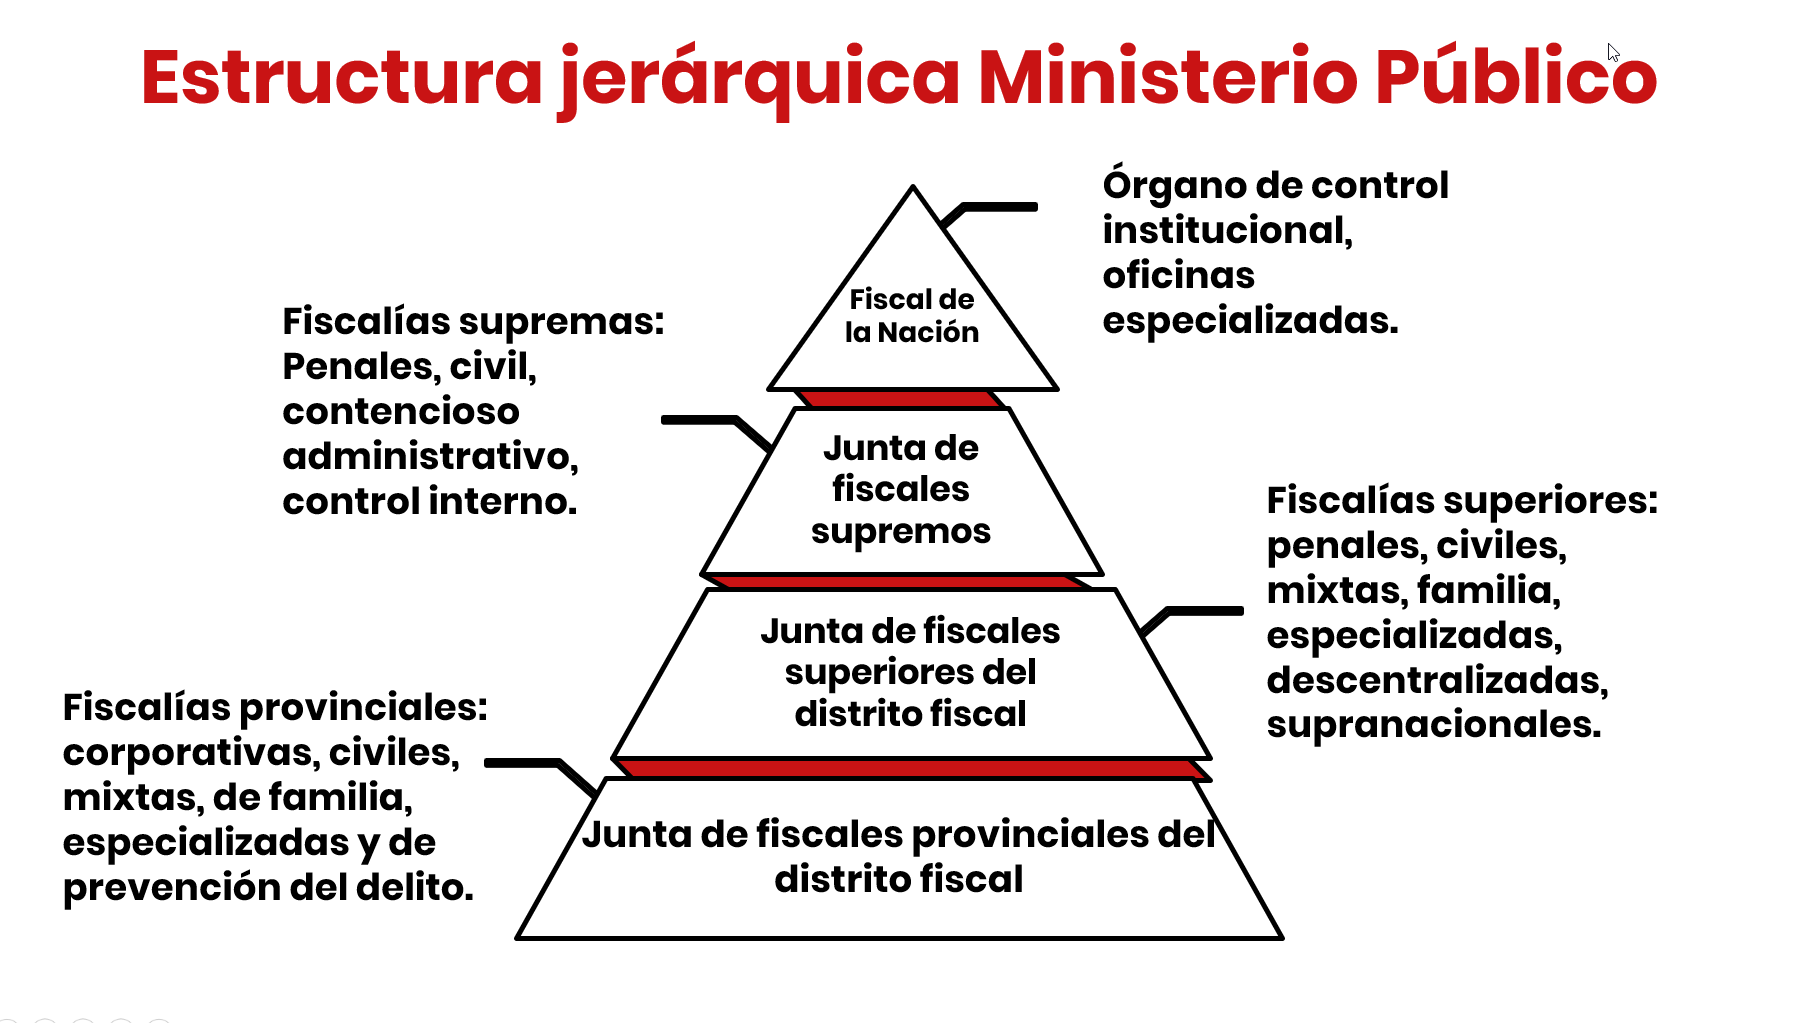 Secretar Estrella Peave Qué es y cuáles son las funciones del Ministerio Público? (artículo IV del  título preliminar del CPP) | LP